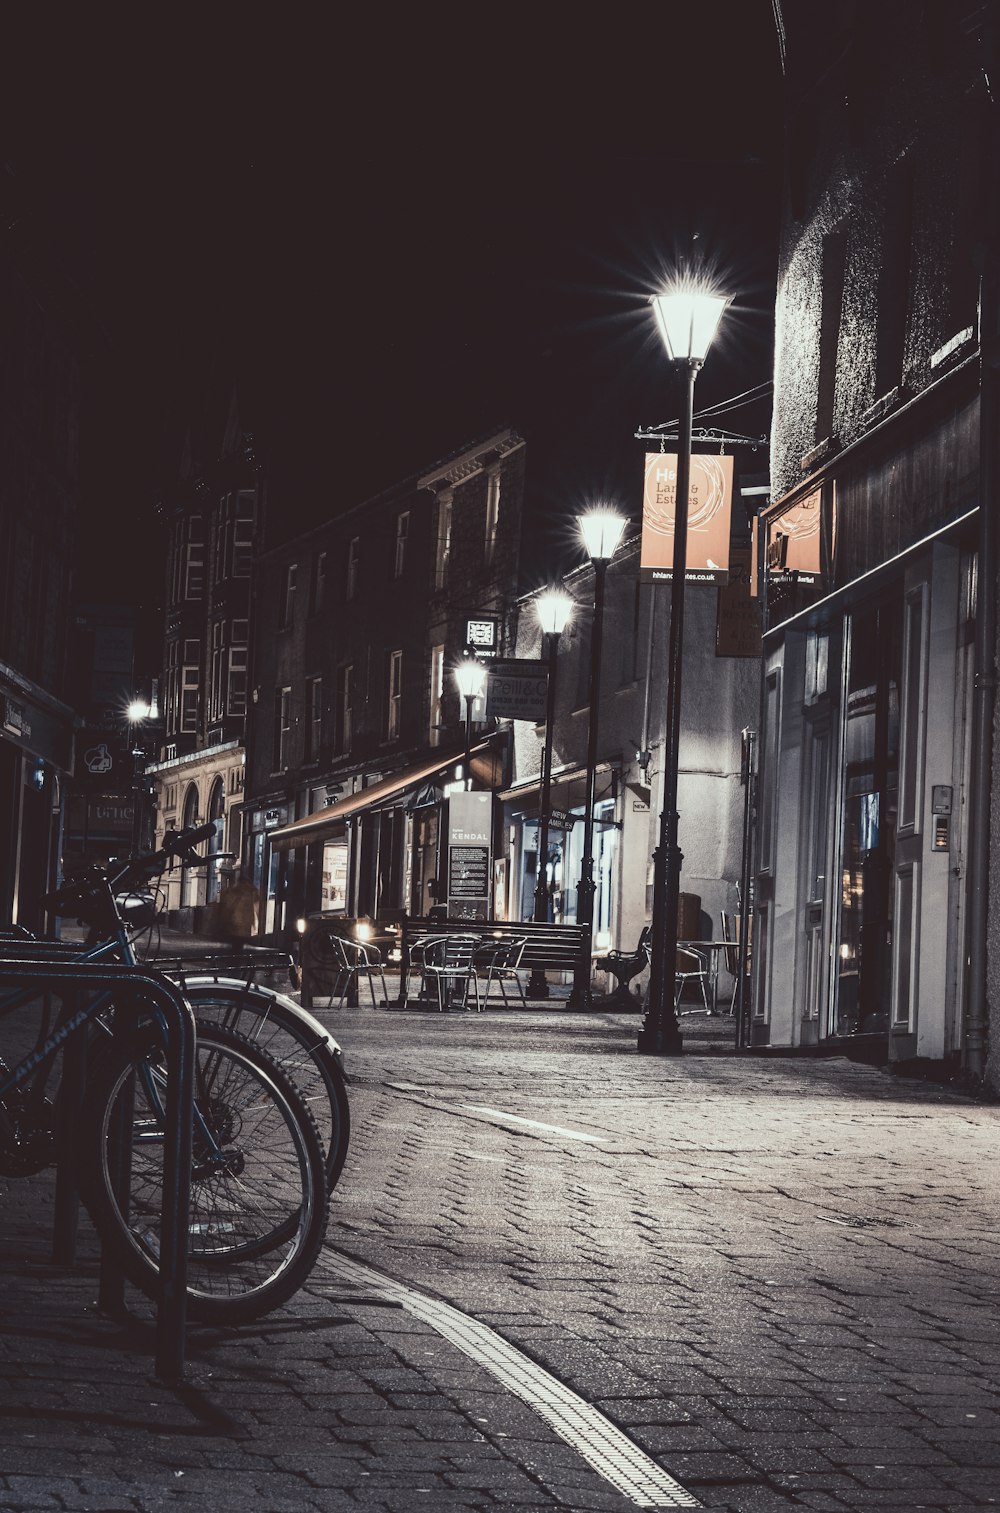 Bicicleta negra estacionada al lado del edificio durante la noche